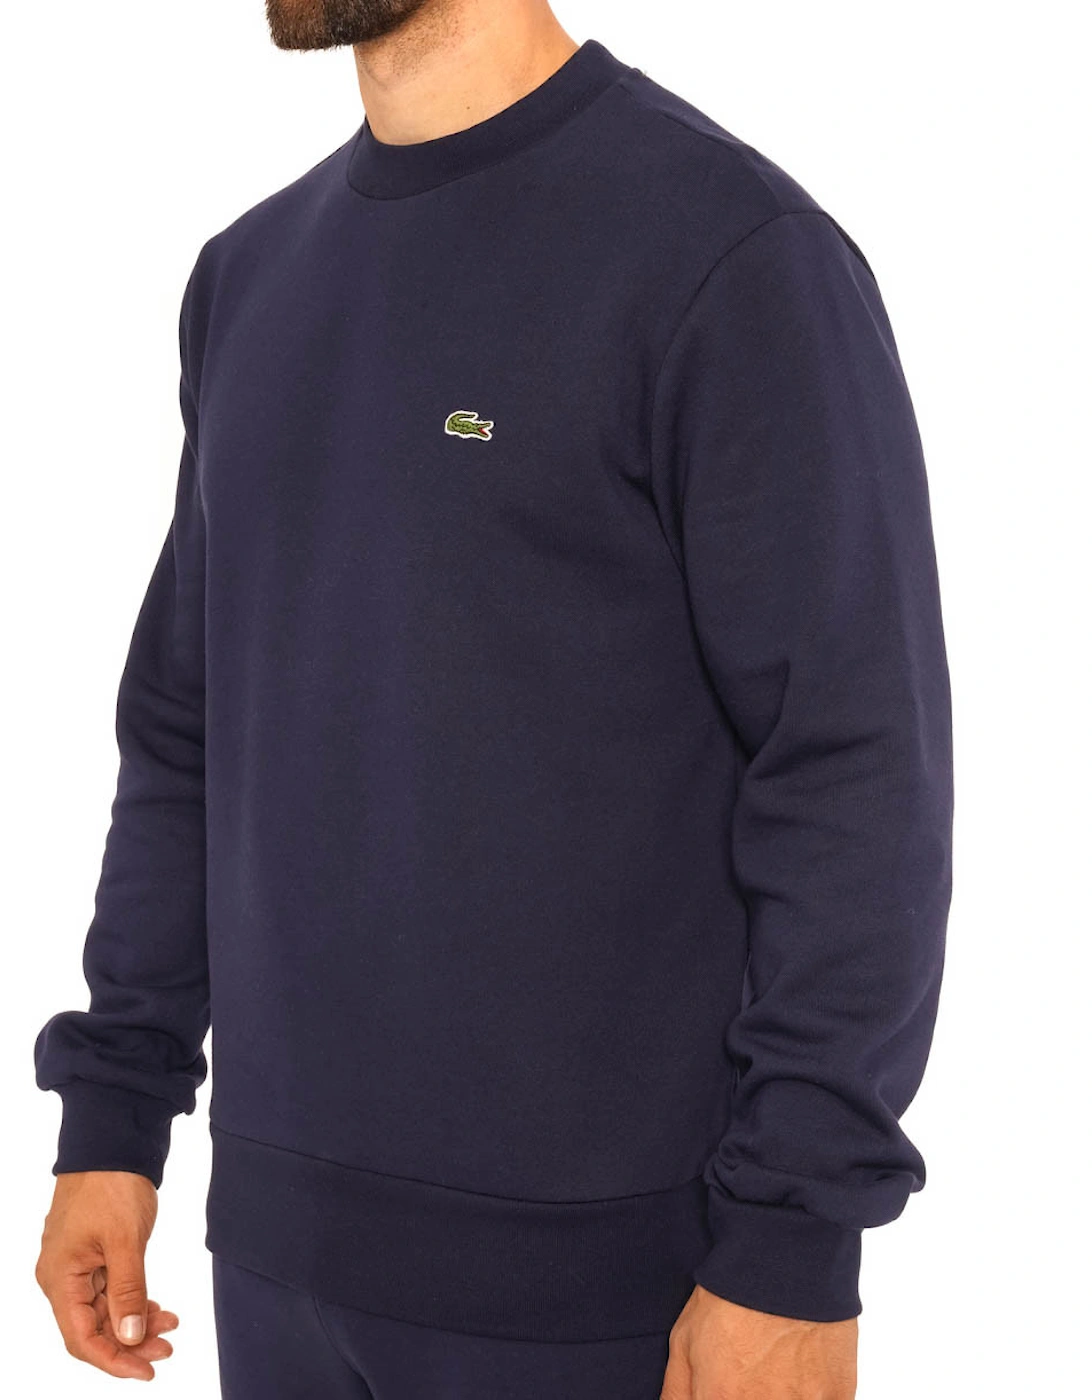 Mens Crew Neck Sweater (Navy)